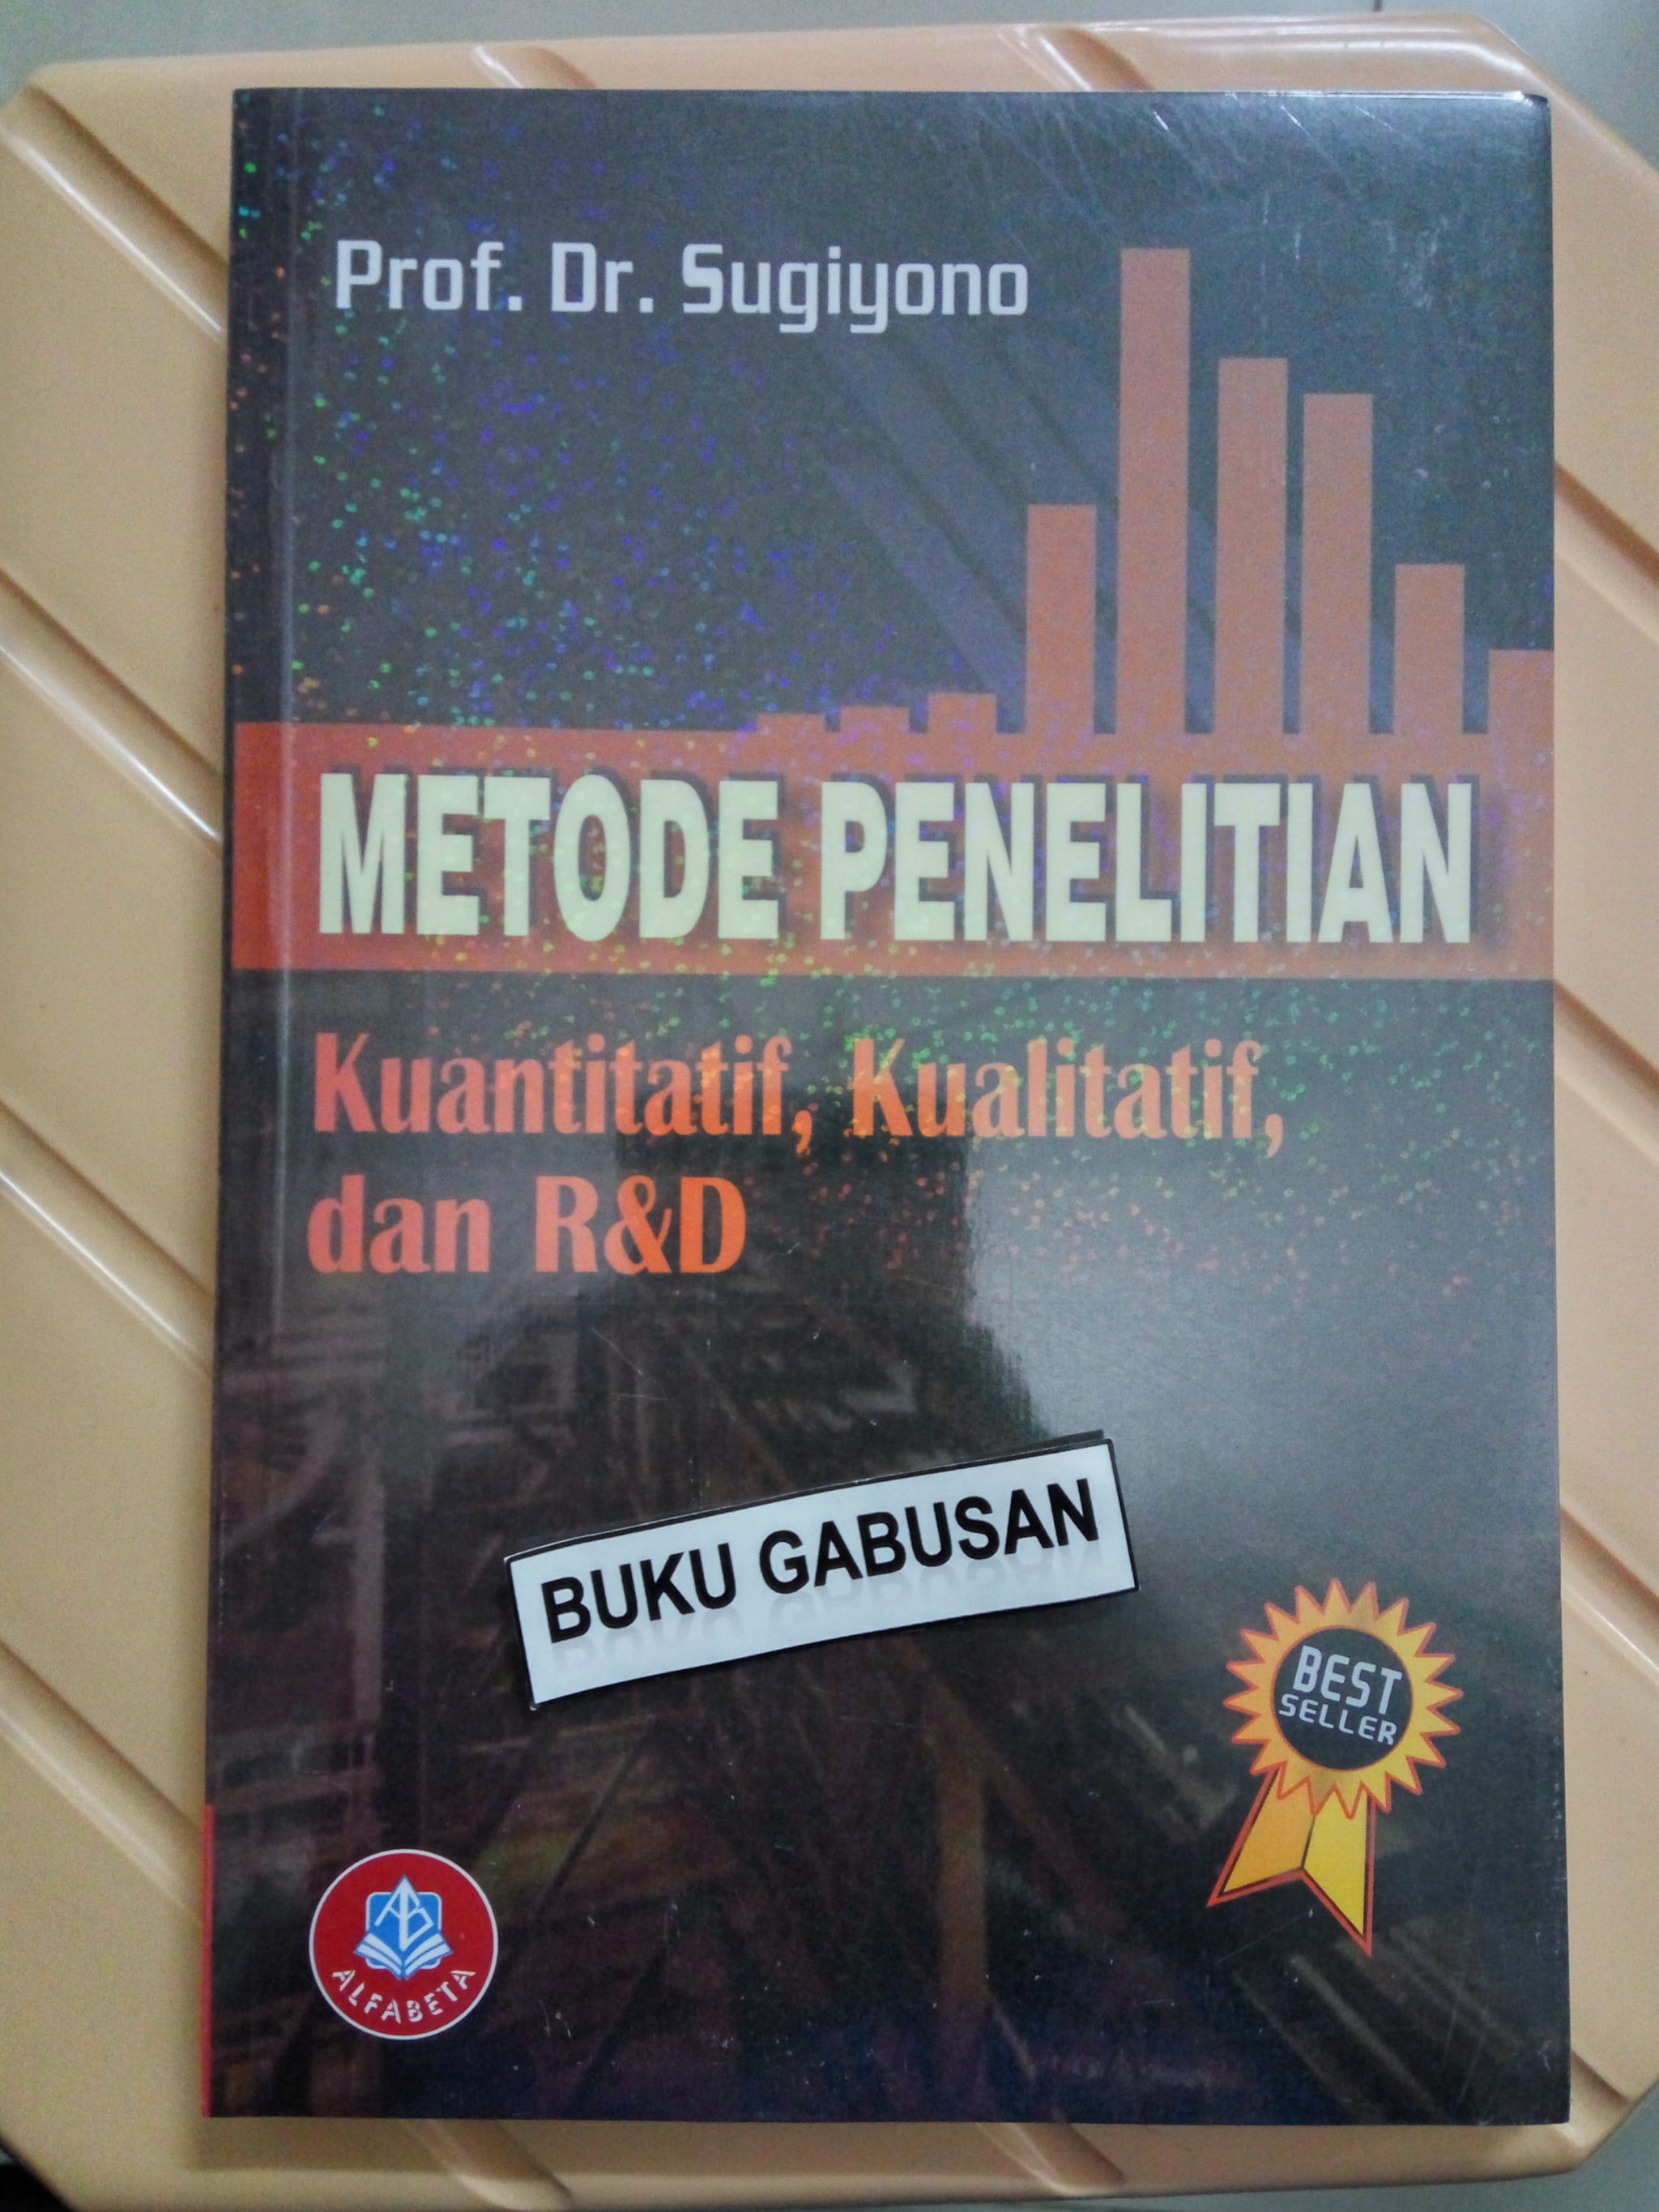 buku metode penelitian sugiyono pdf free